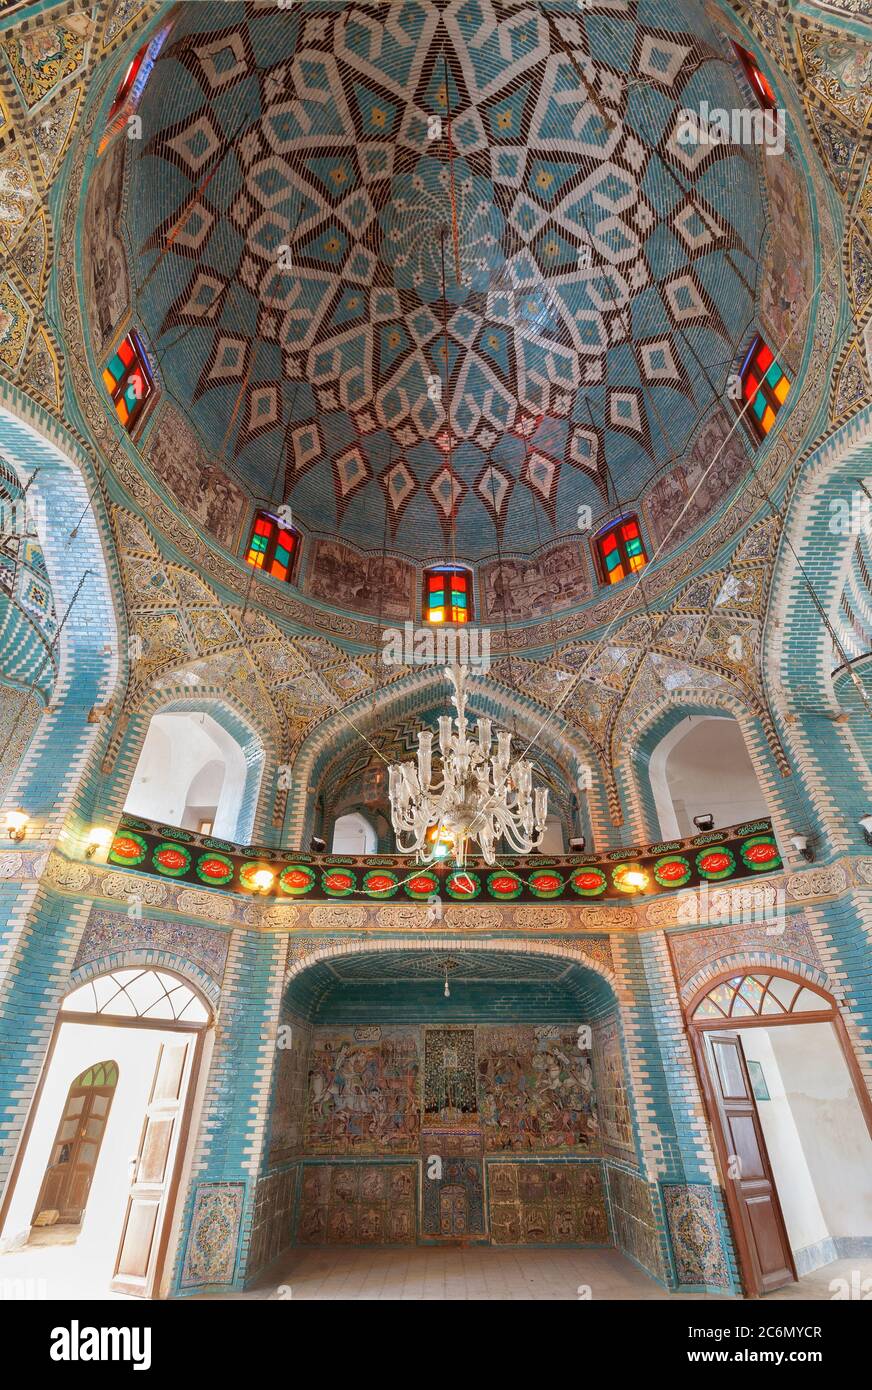 La décoration du plafond et des murs du dôme de Tekyeh Moaven al-molk à Kemanshah, Iran. Mosaïque de céramique avec les images de l'histoire de l'is Banque D'Images